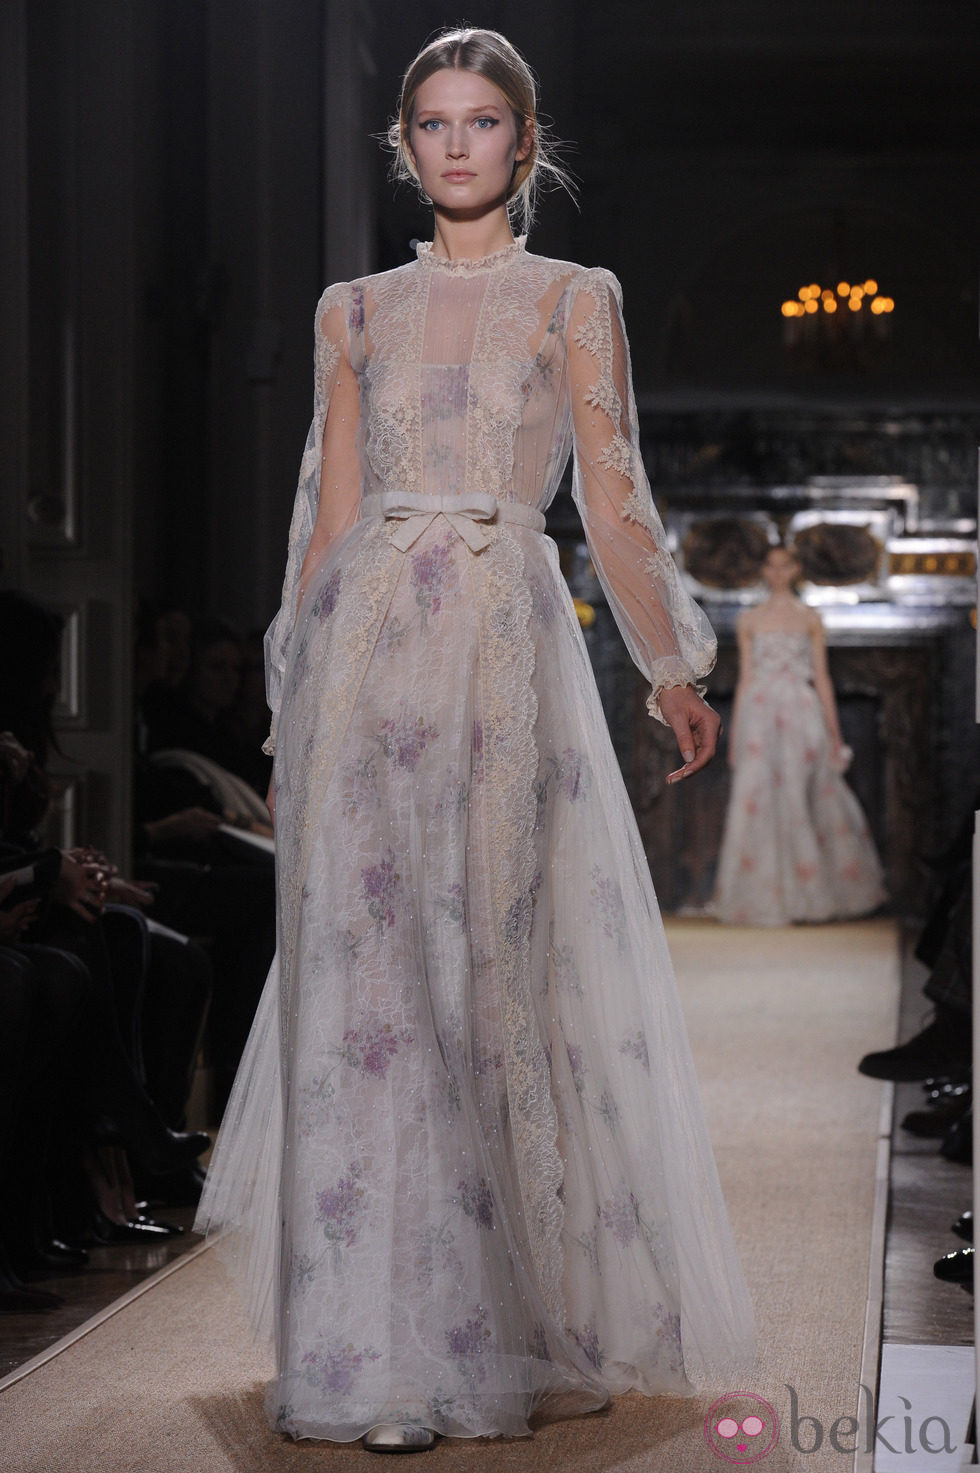 Vestido de gasa transparente con detalles florales en lila de Valentino Alta Costura